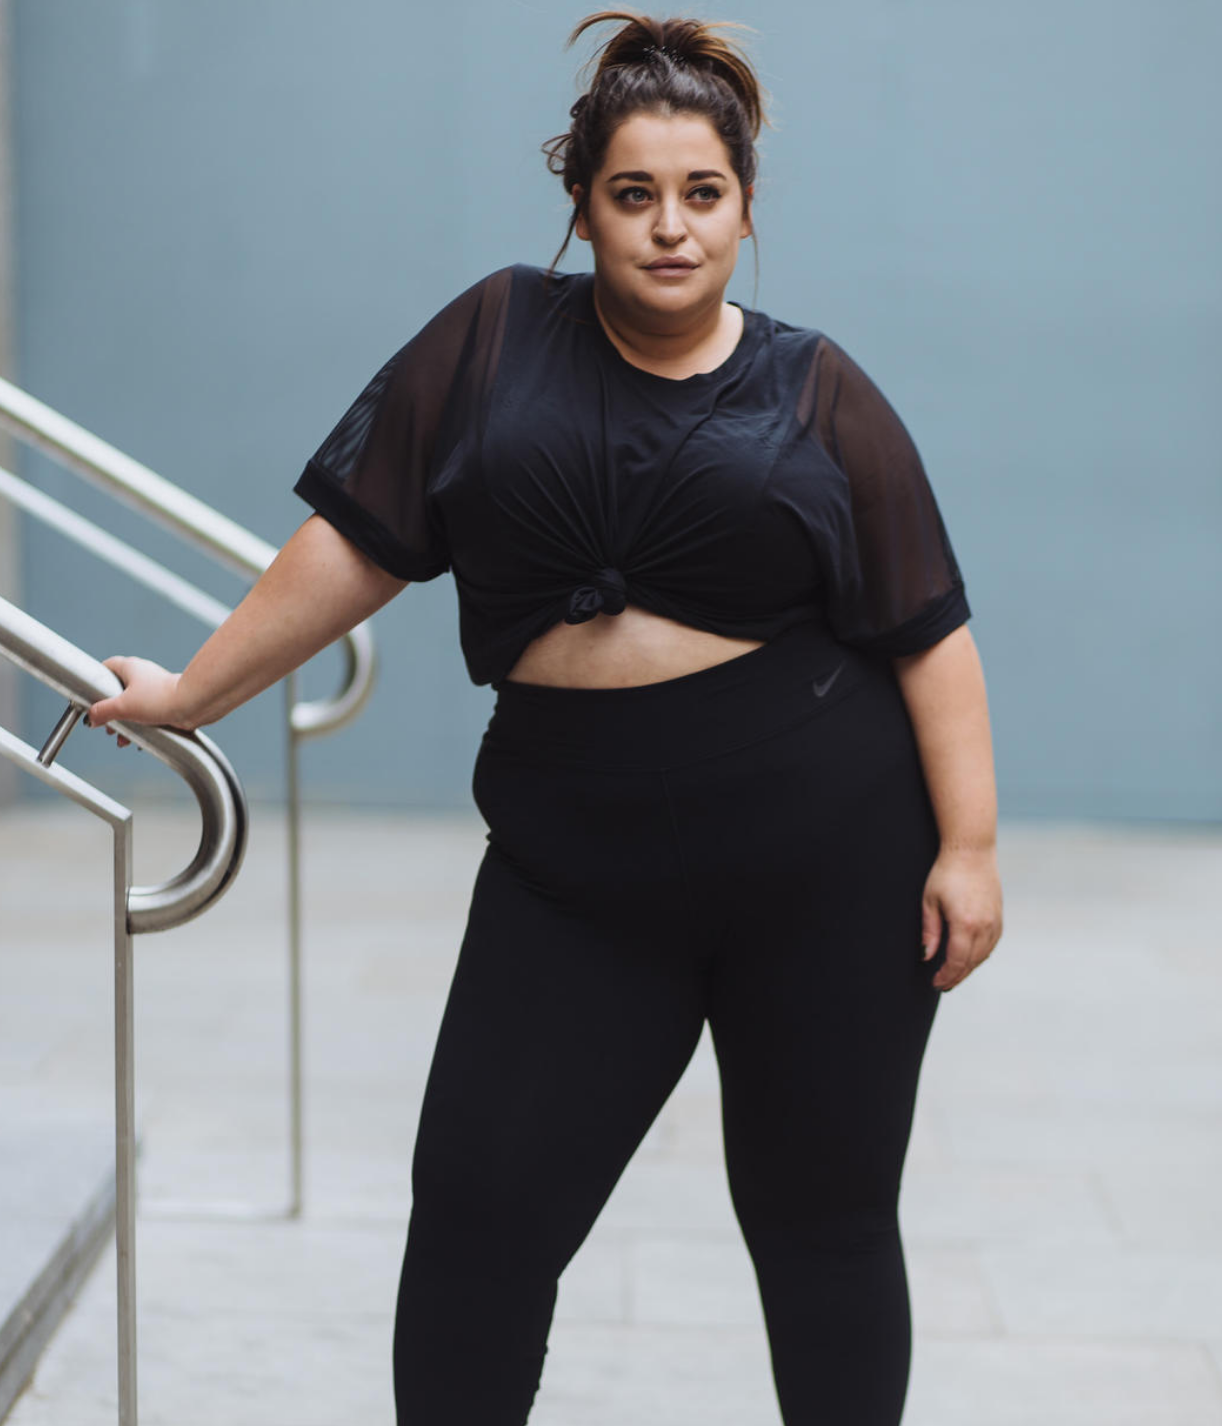 Nike lanza su primera línea de ropa Plus Size para mujeres - Revista